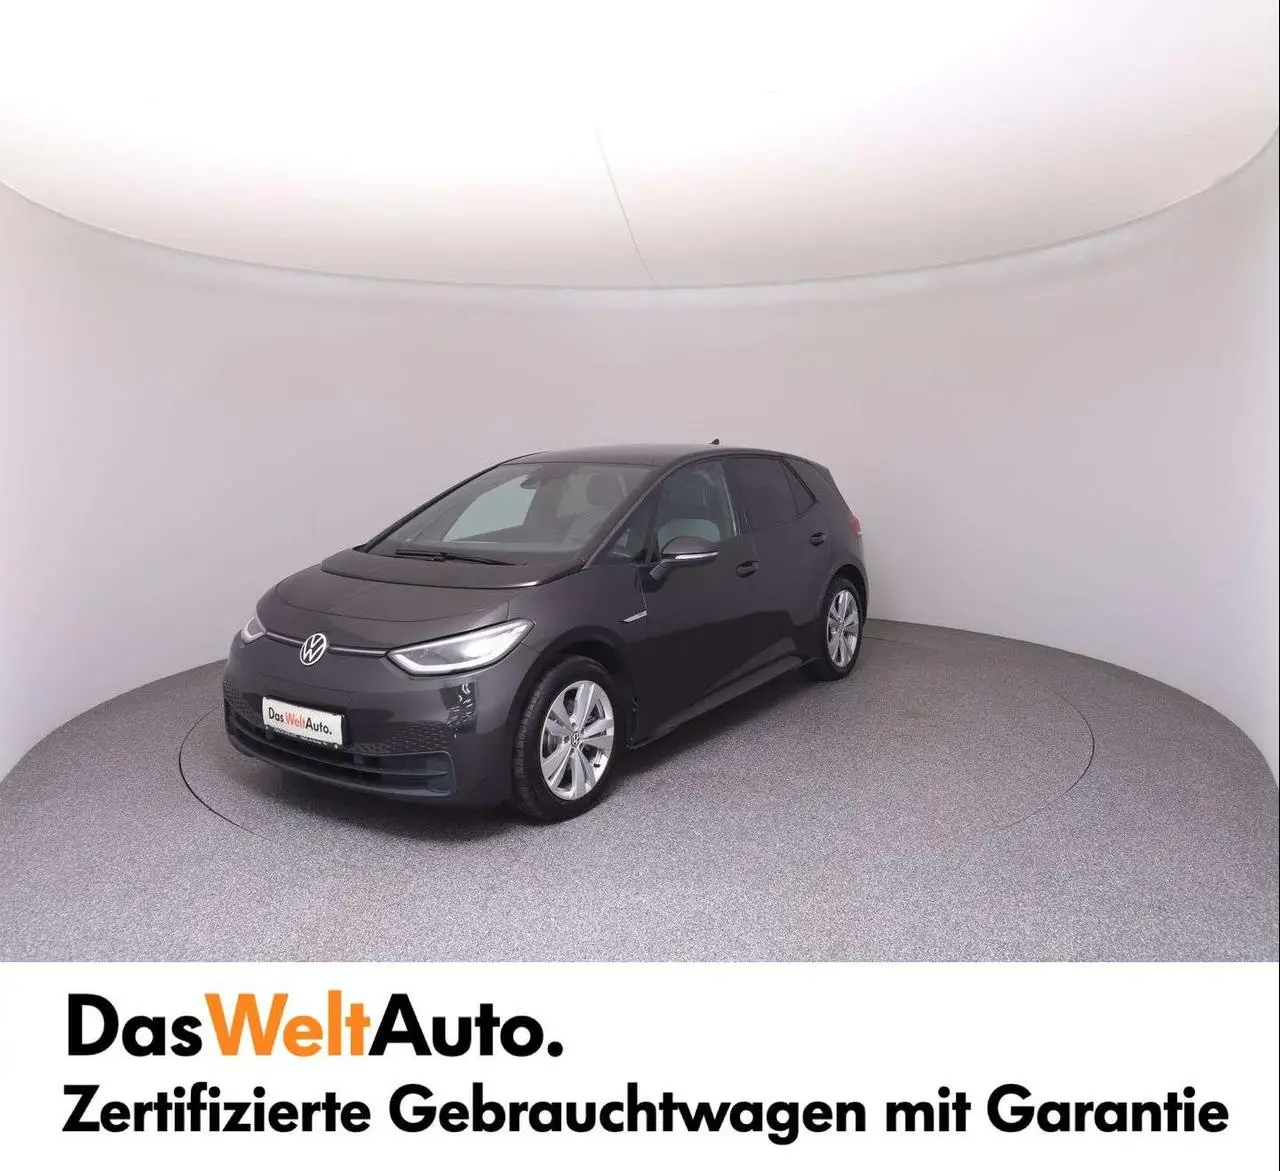 Photo 1 : Volkswagen Id.3 2021 Electric